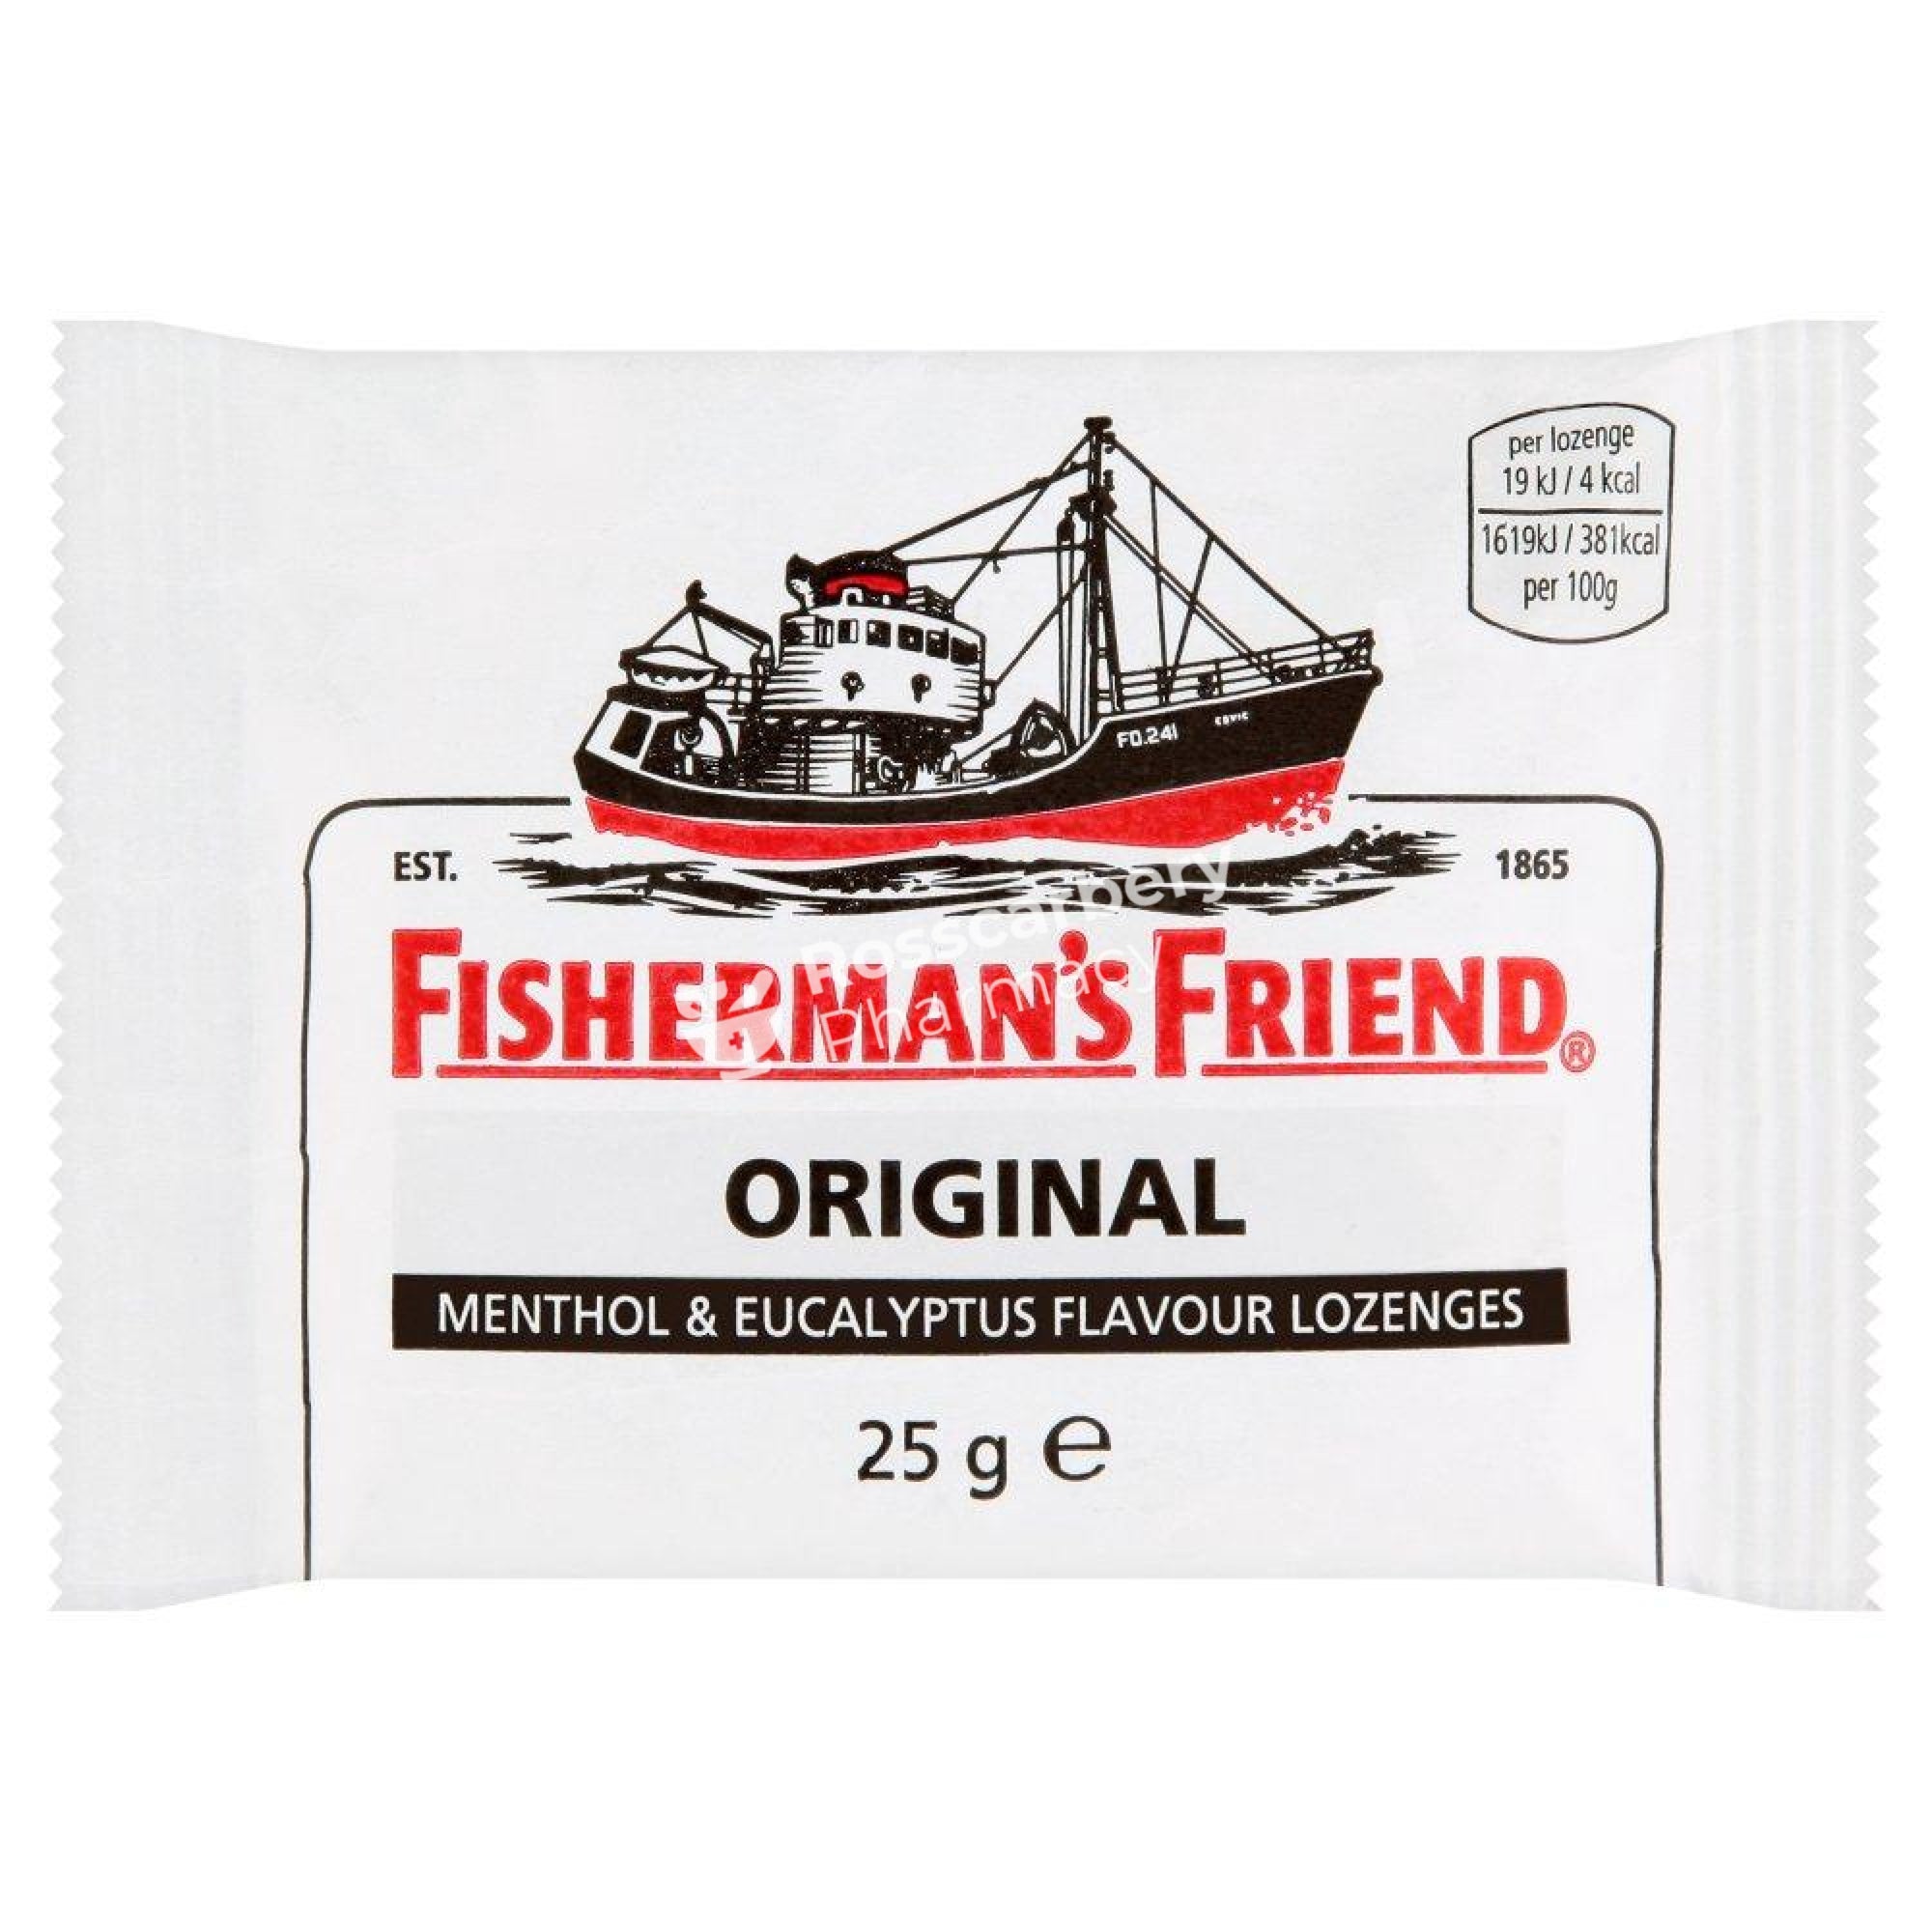 Fishermans Friend Original - Menthol & Eucalyptus Flavour Lozenges Sweets/lozenges/pastilles